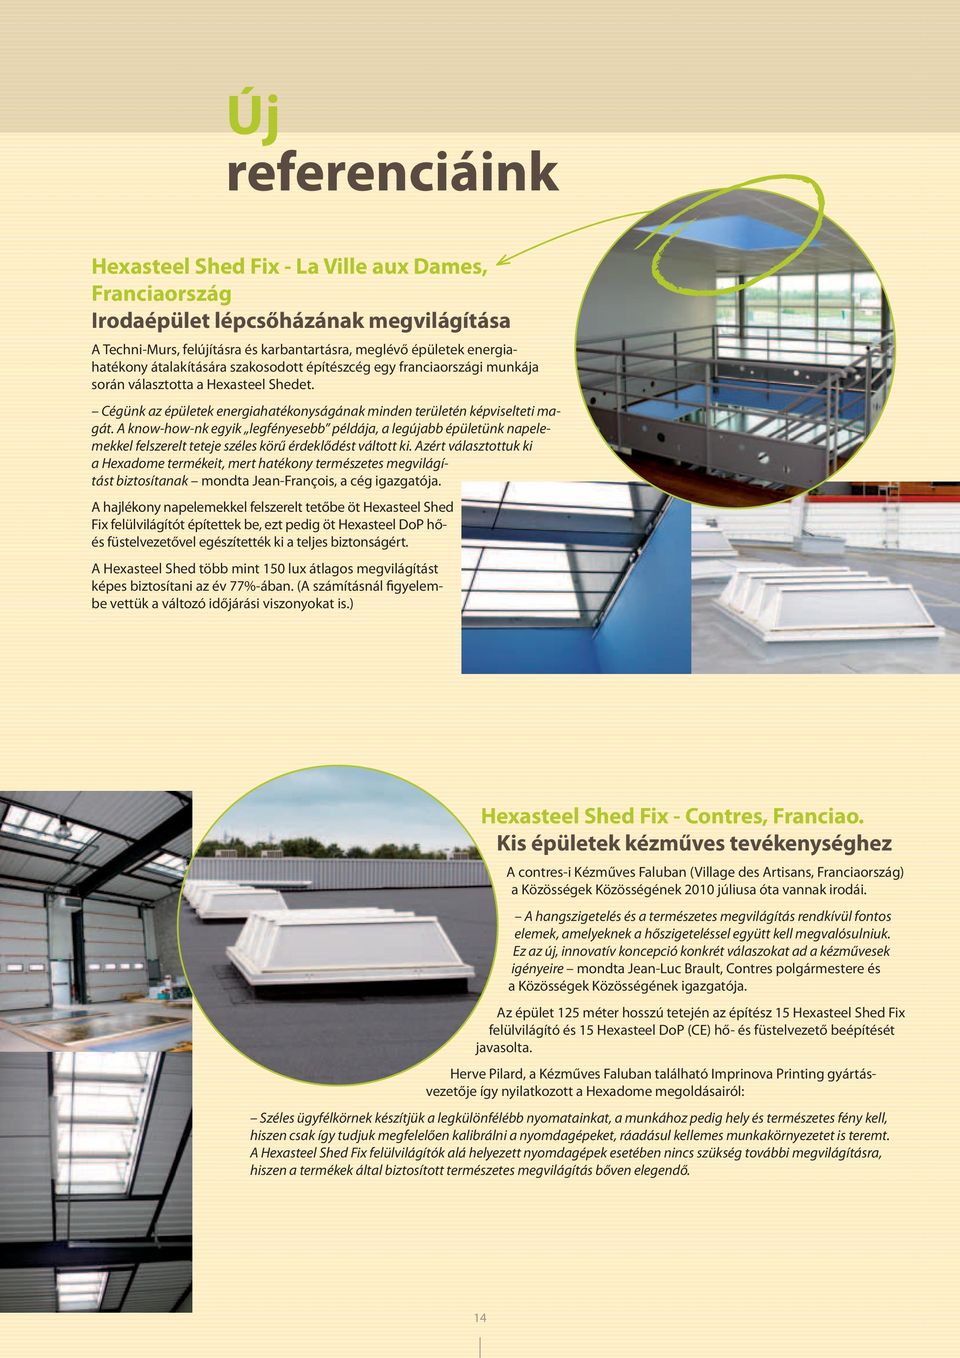 A know-how-nk egyik legfényesebb példája, a legújabb épületünk napelemekkel felszerelt teteje széles körű érdeklődést váltott ki.